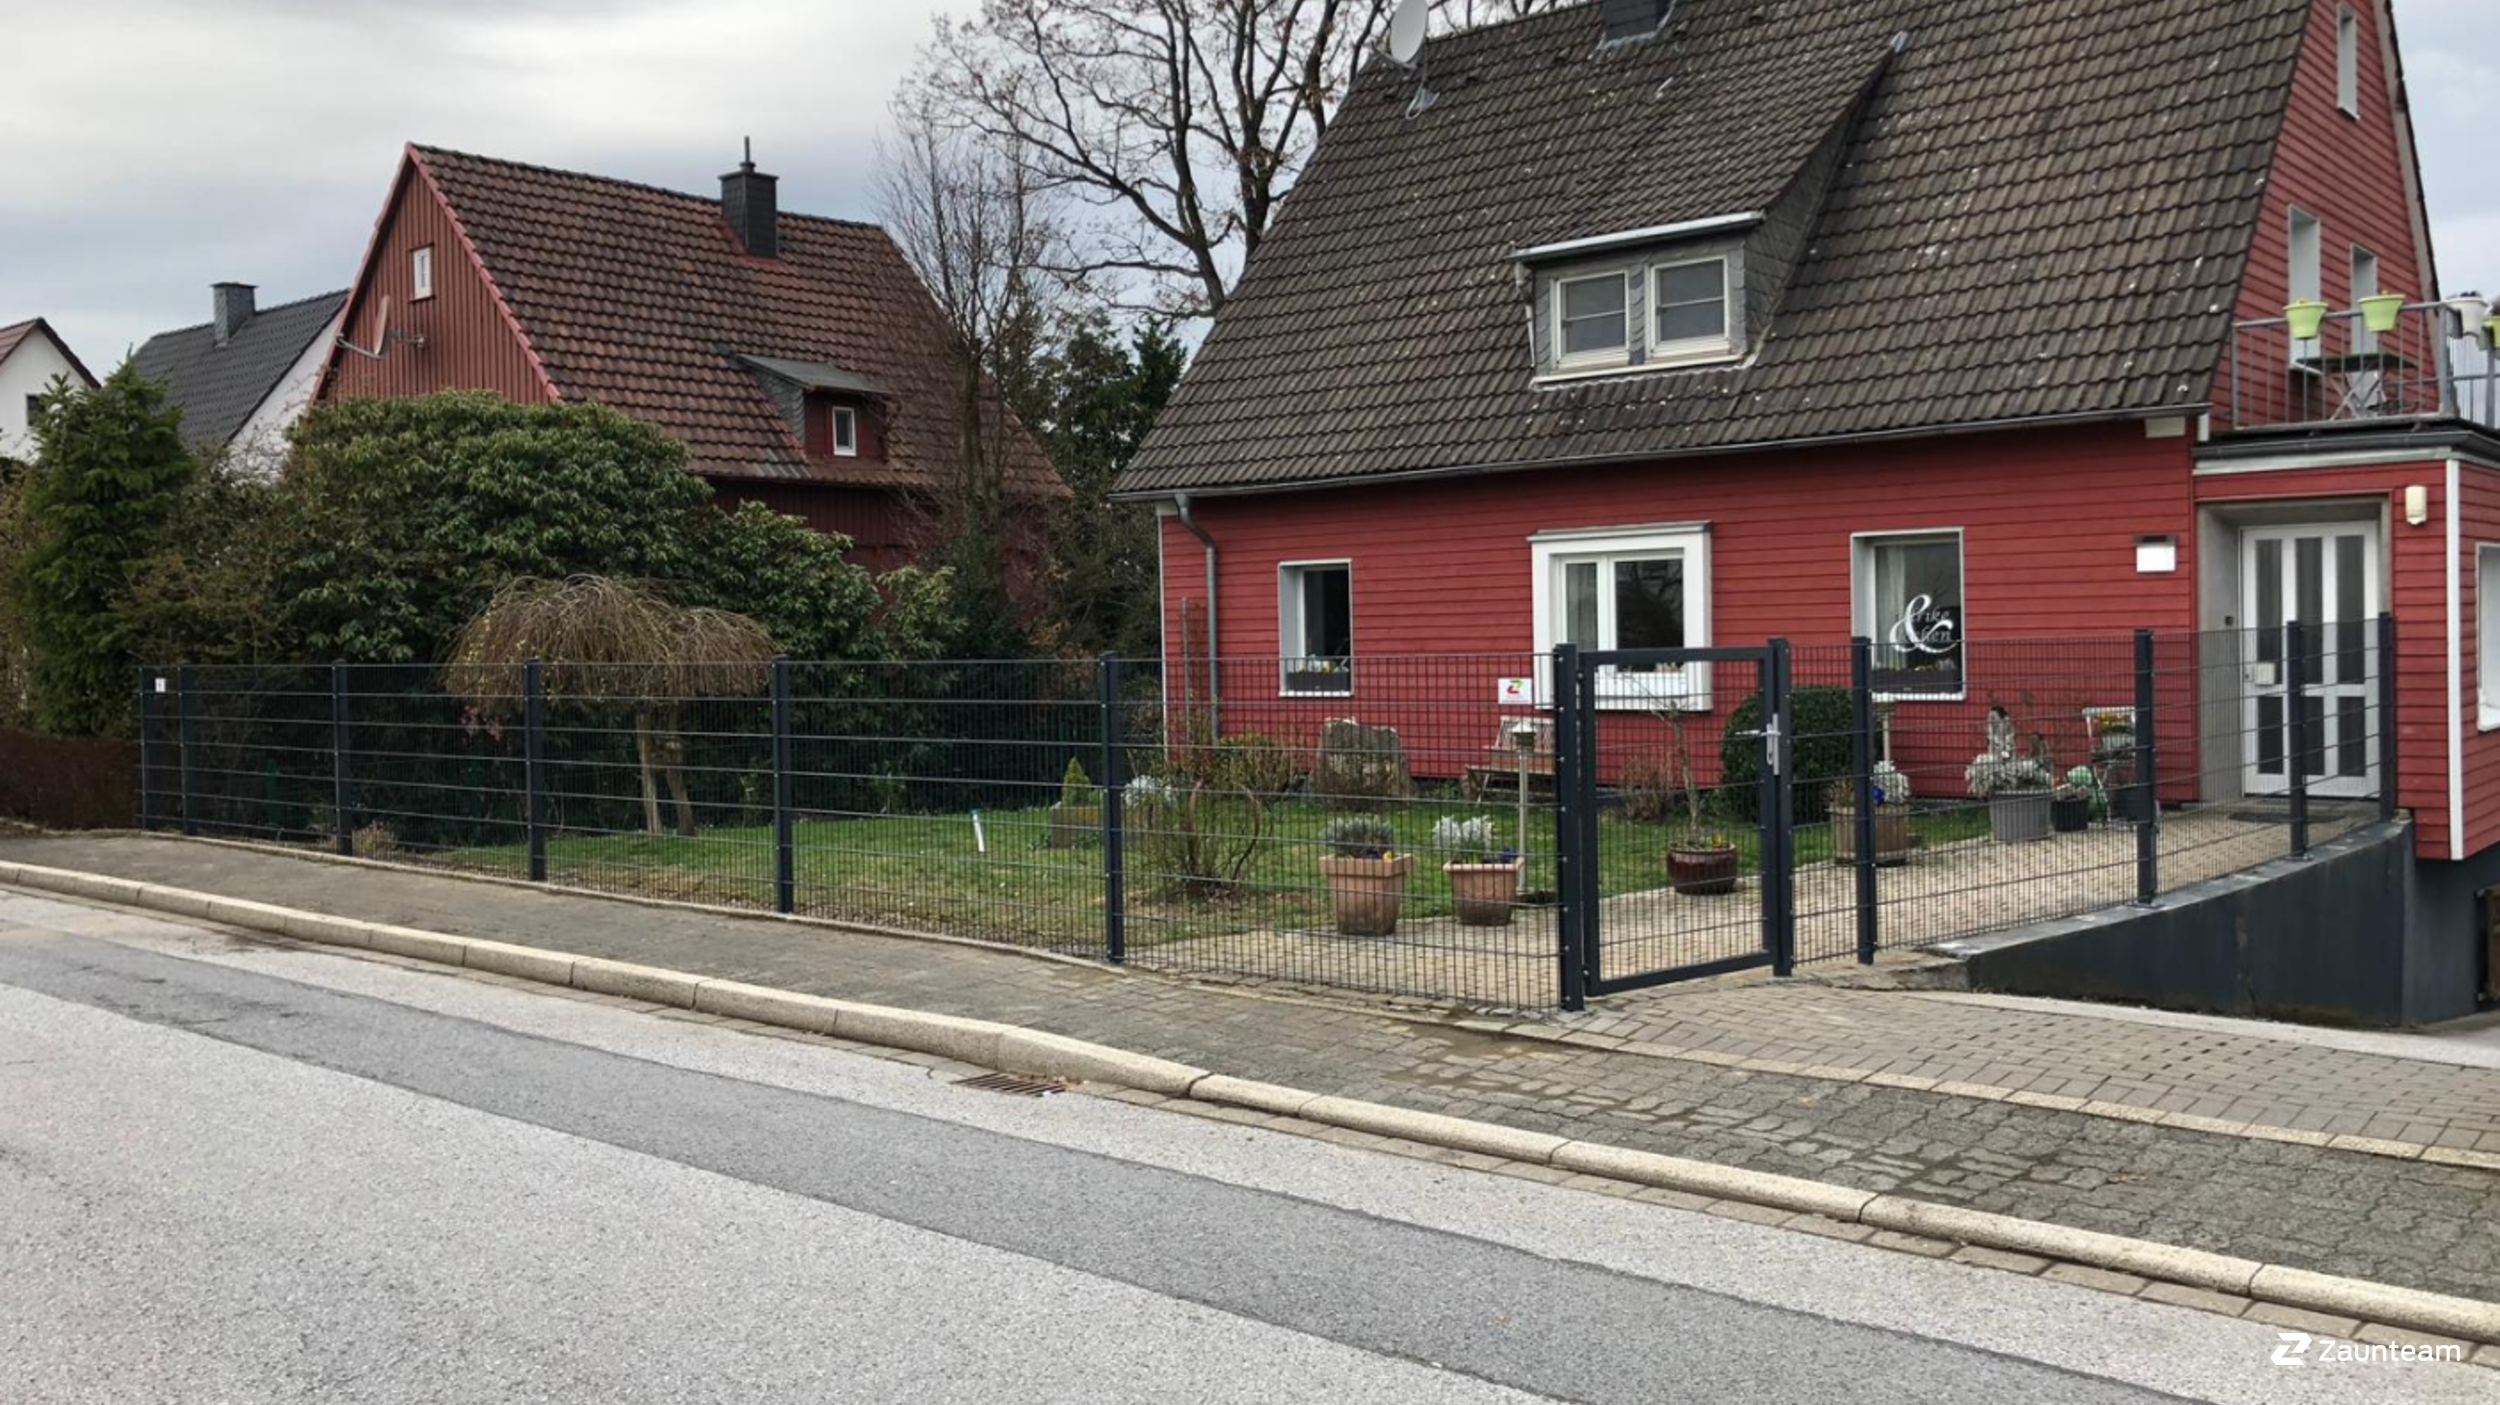 Clôture en panneau double fil de 2019 à 58553 Halver Allemagne de Zaunteam Sauerland.